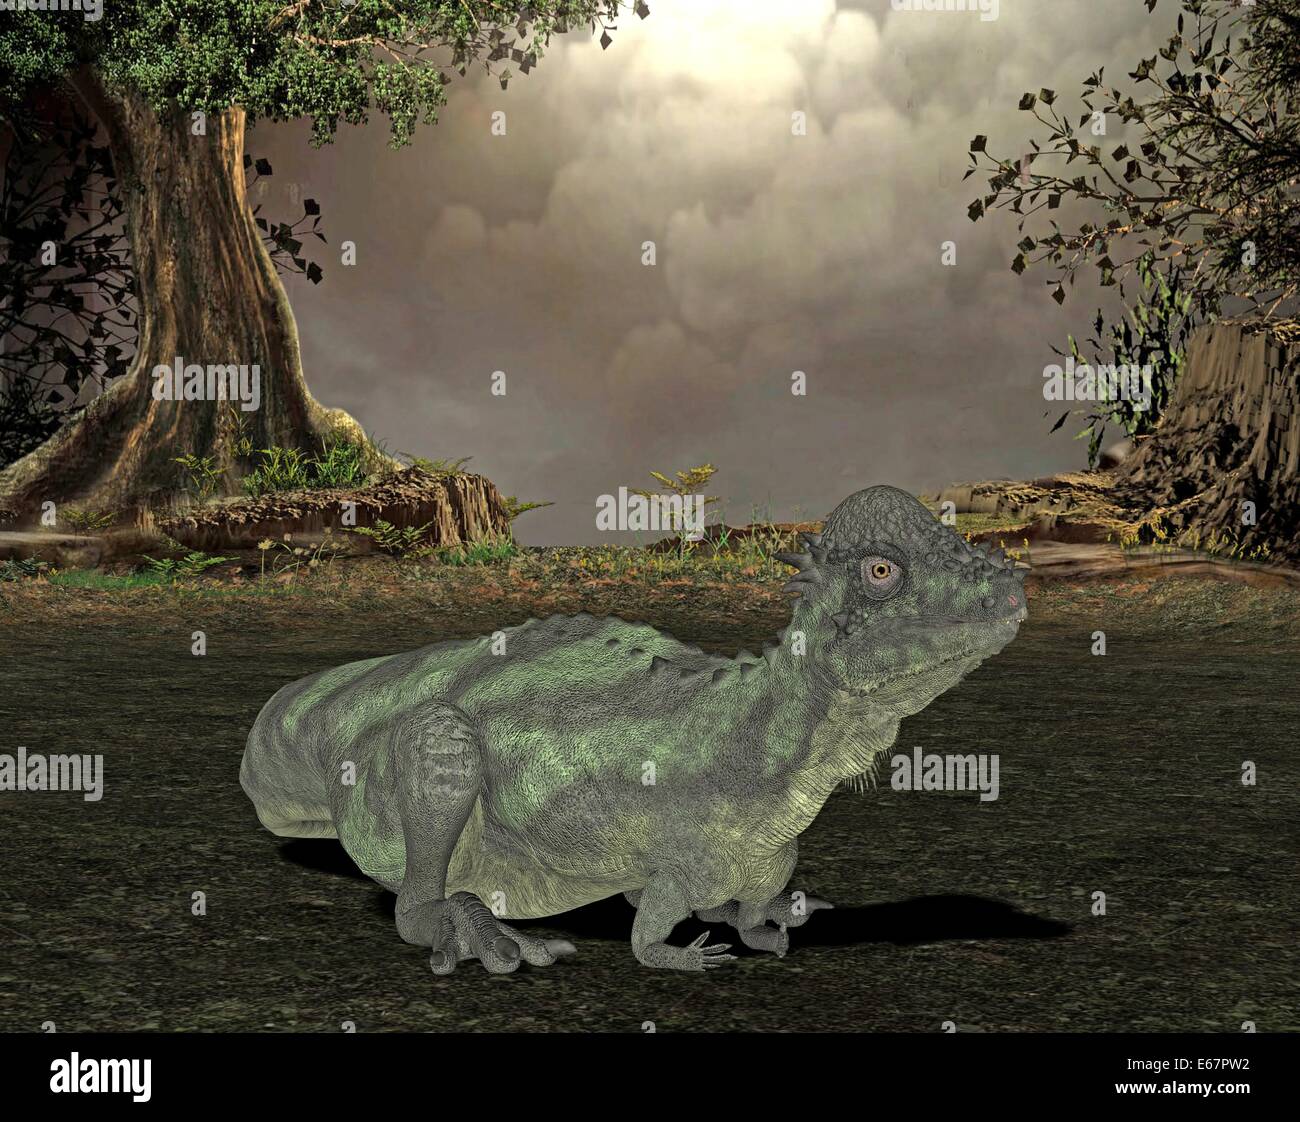 Dinosaurier Pachycephalosaurus / dinosaur Pachycephalosaurus Stock Photo